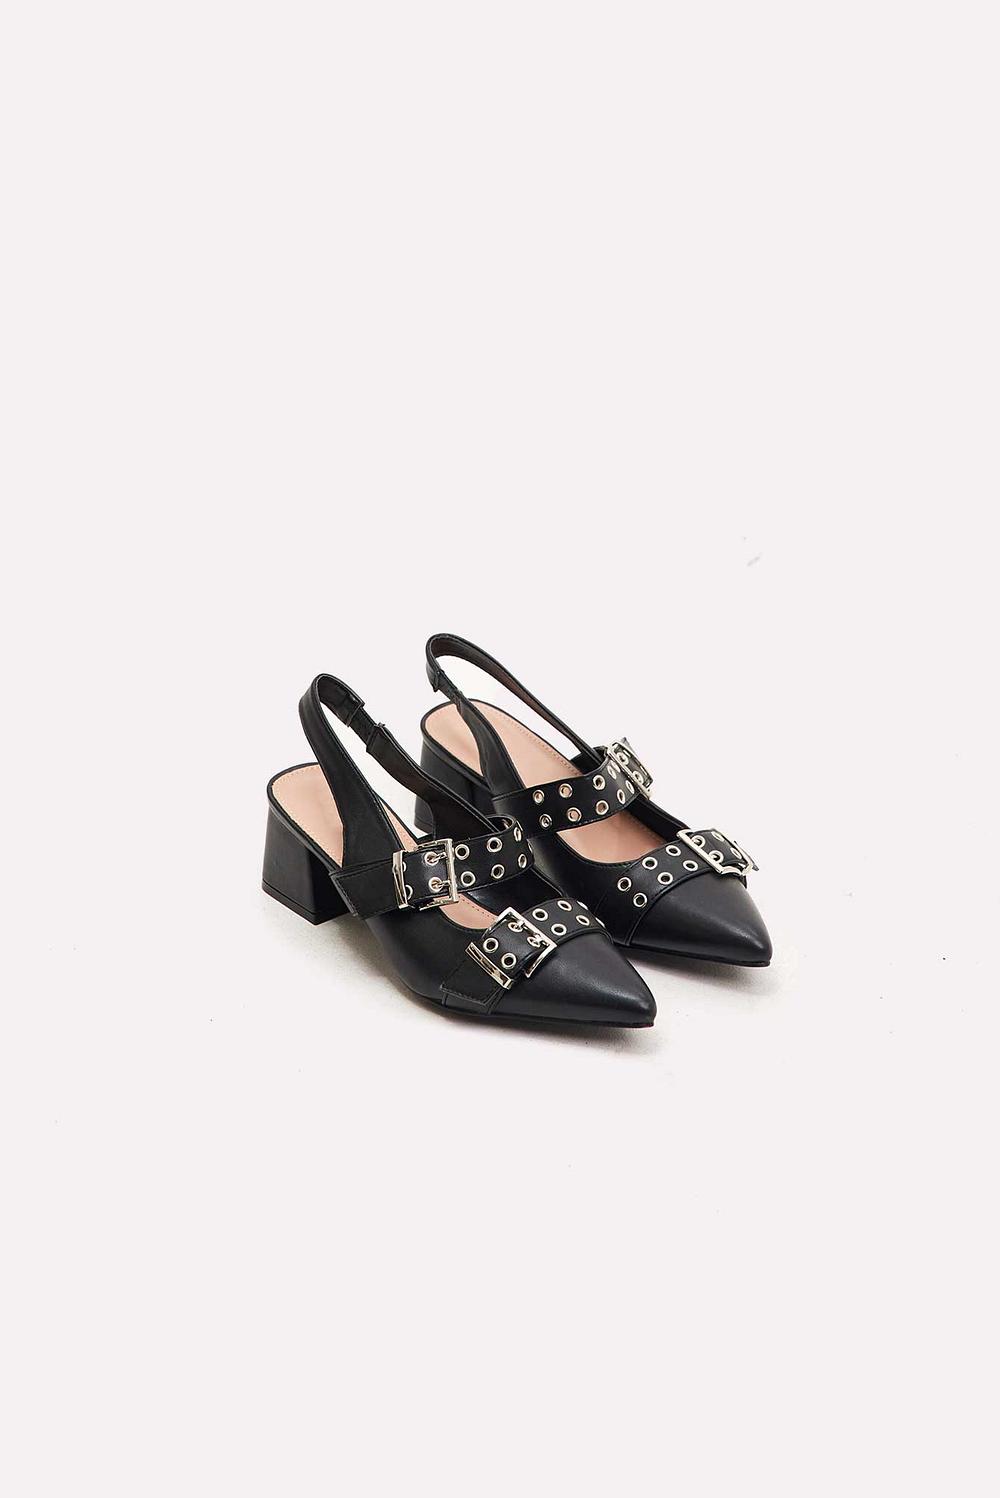 Chaussures noires à talons